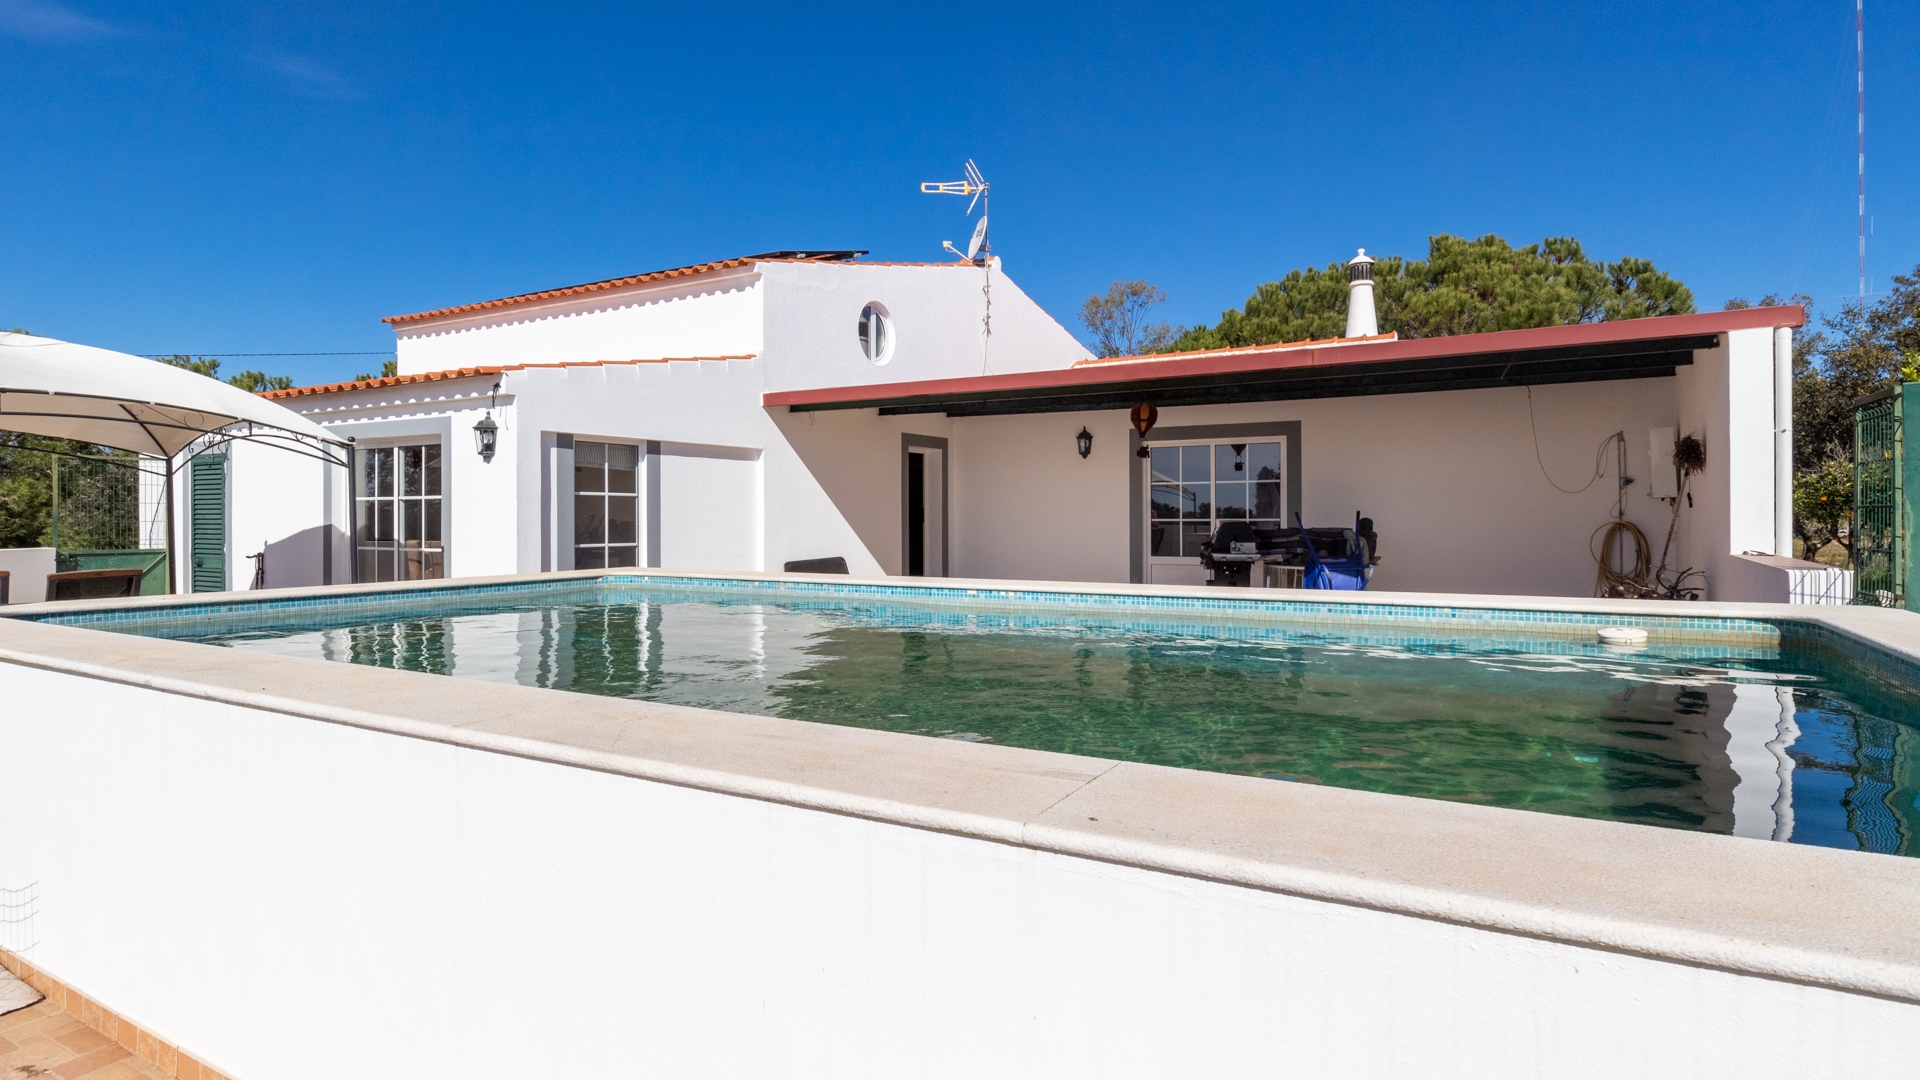 Maison de 4 chambres situé sur un immense terrain et idéal pour les chevaux avec un lac près d'Alcoutim, dans l'est de l'Algarve | TV2077 